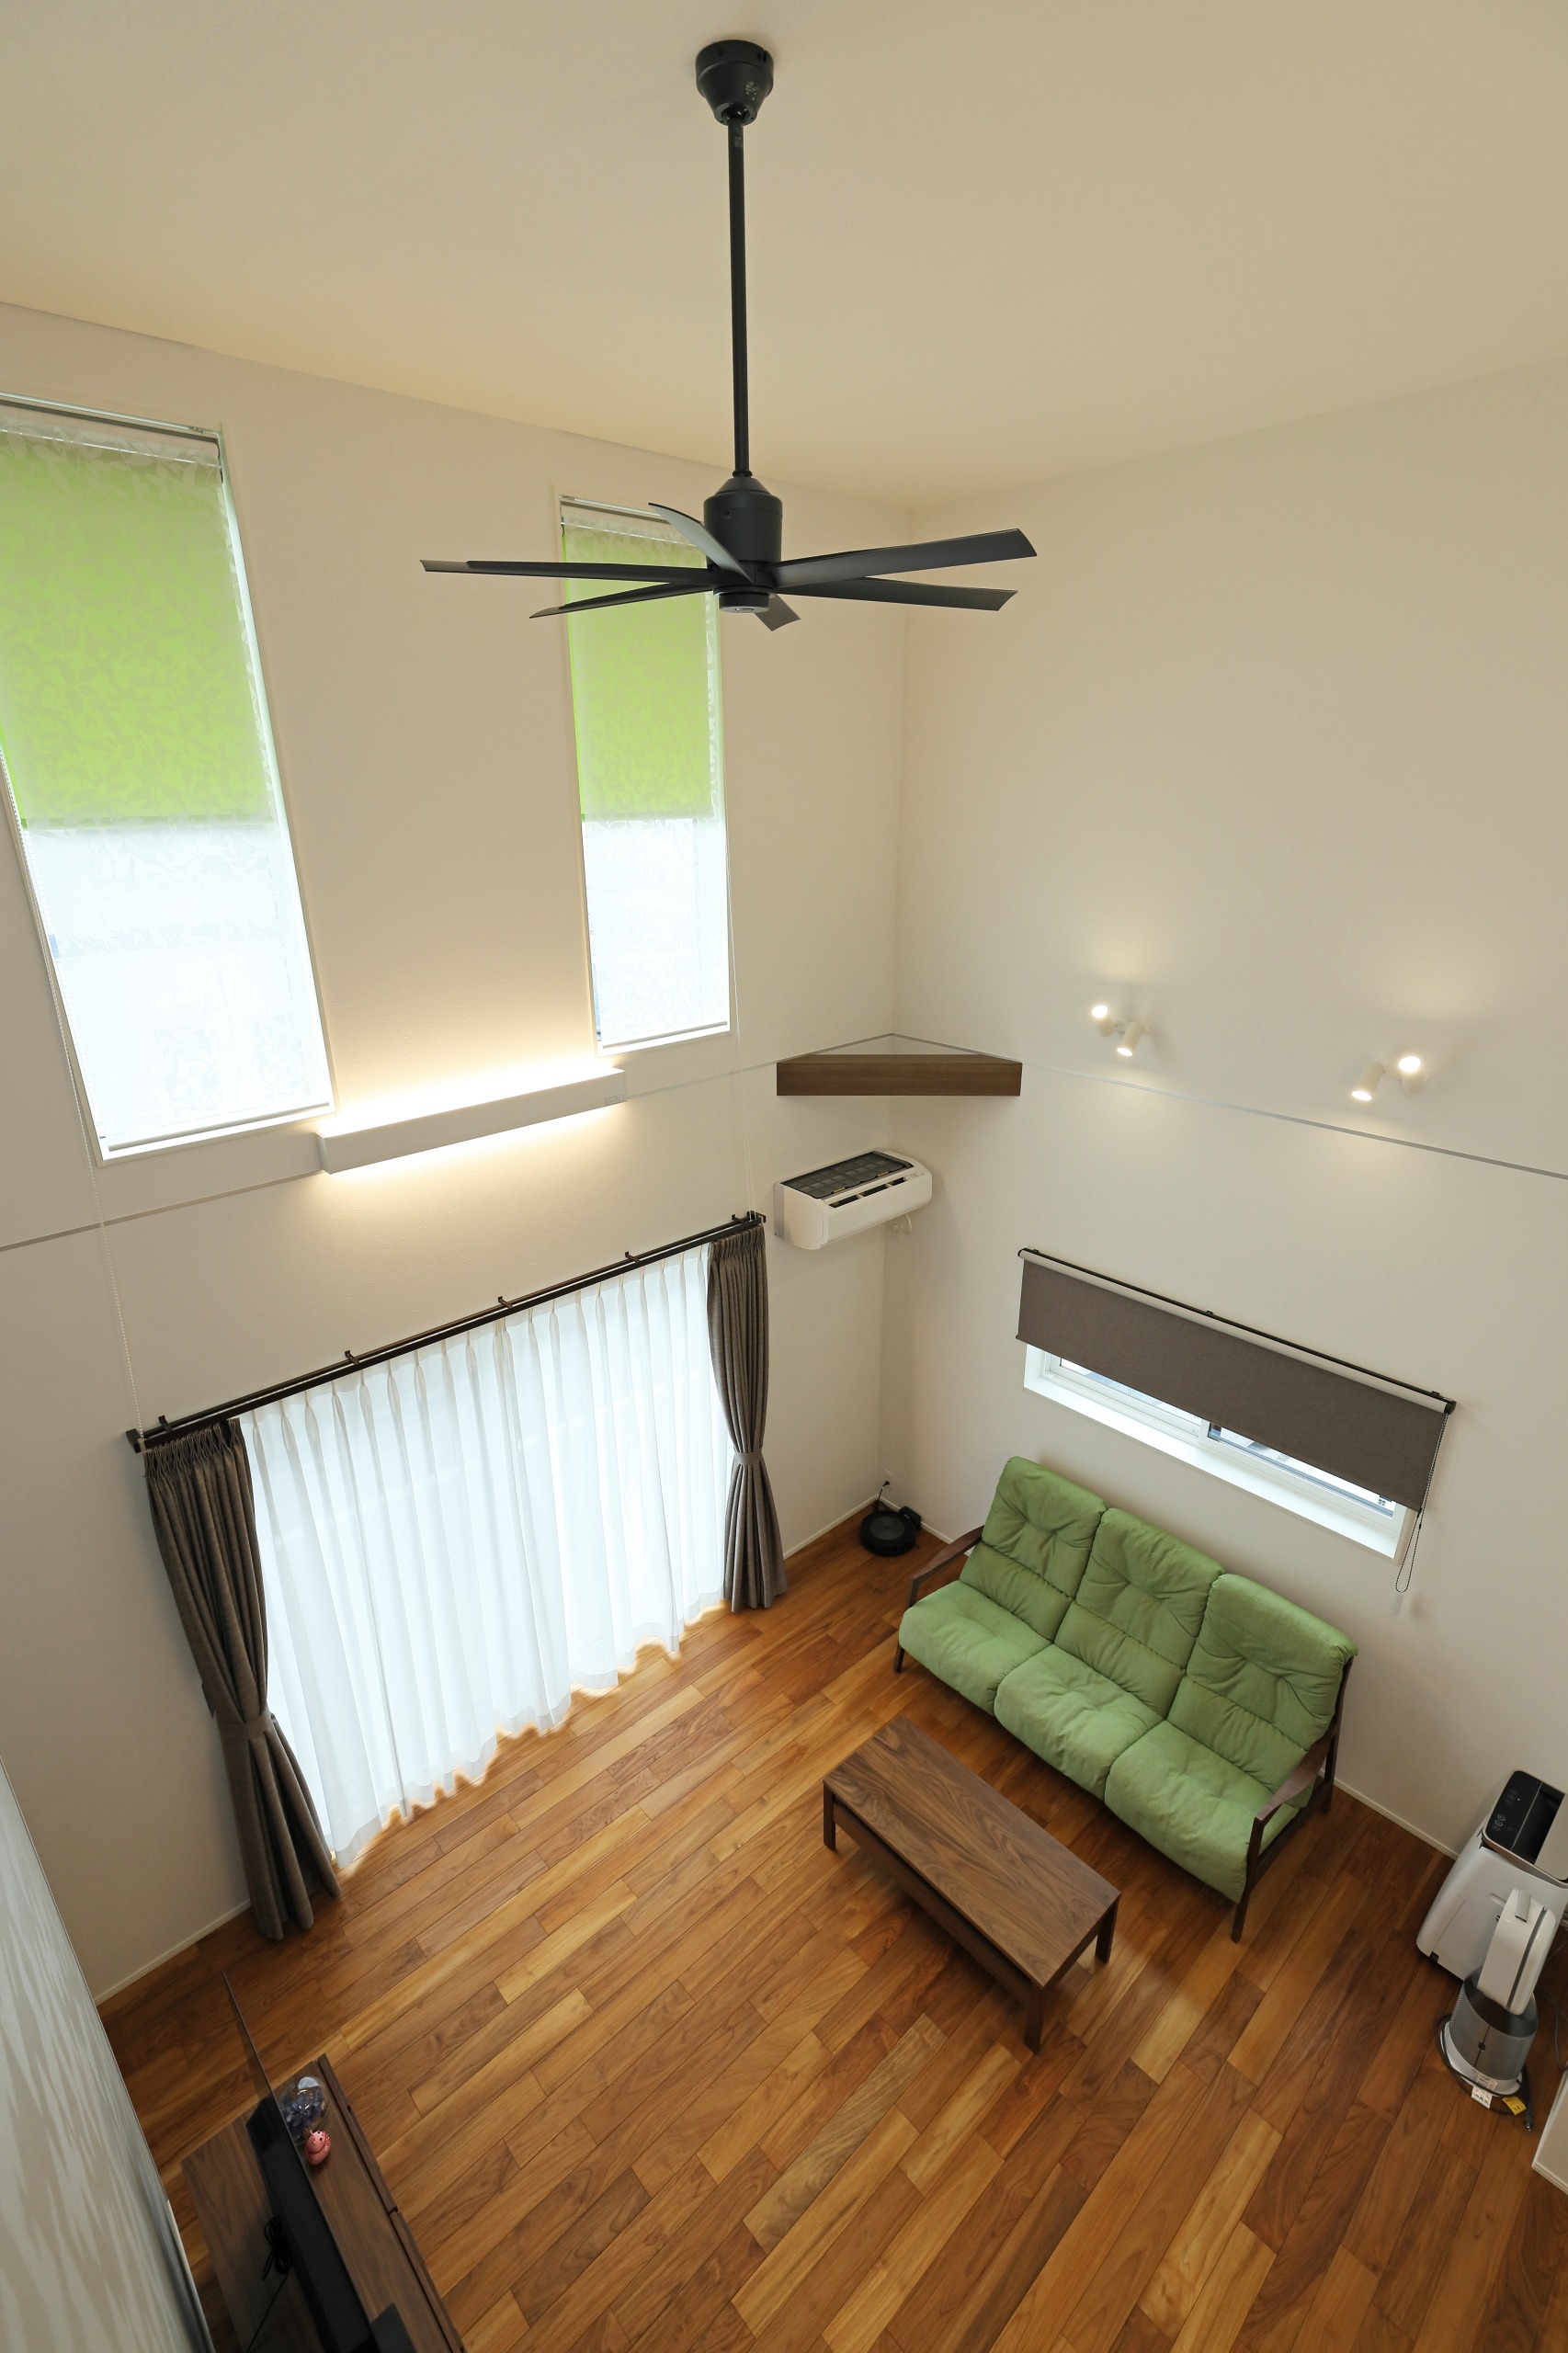 小窓のロールスクリーンとカーテン、ソファをモスグリーンで統一し、居心地よい落ち着きのある空間に。